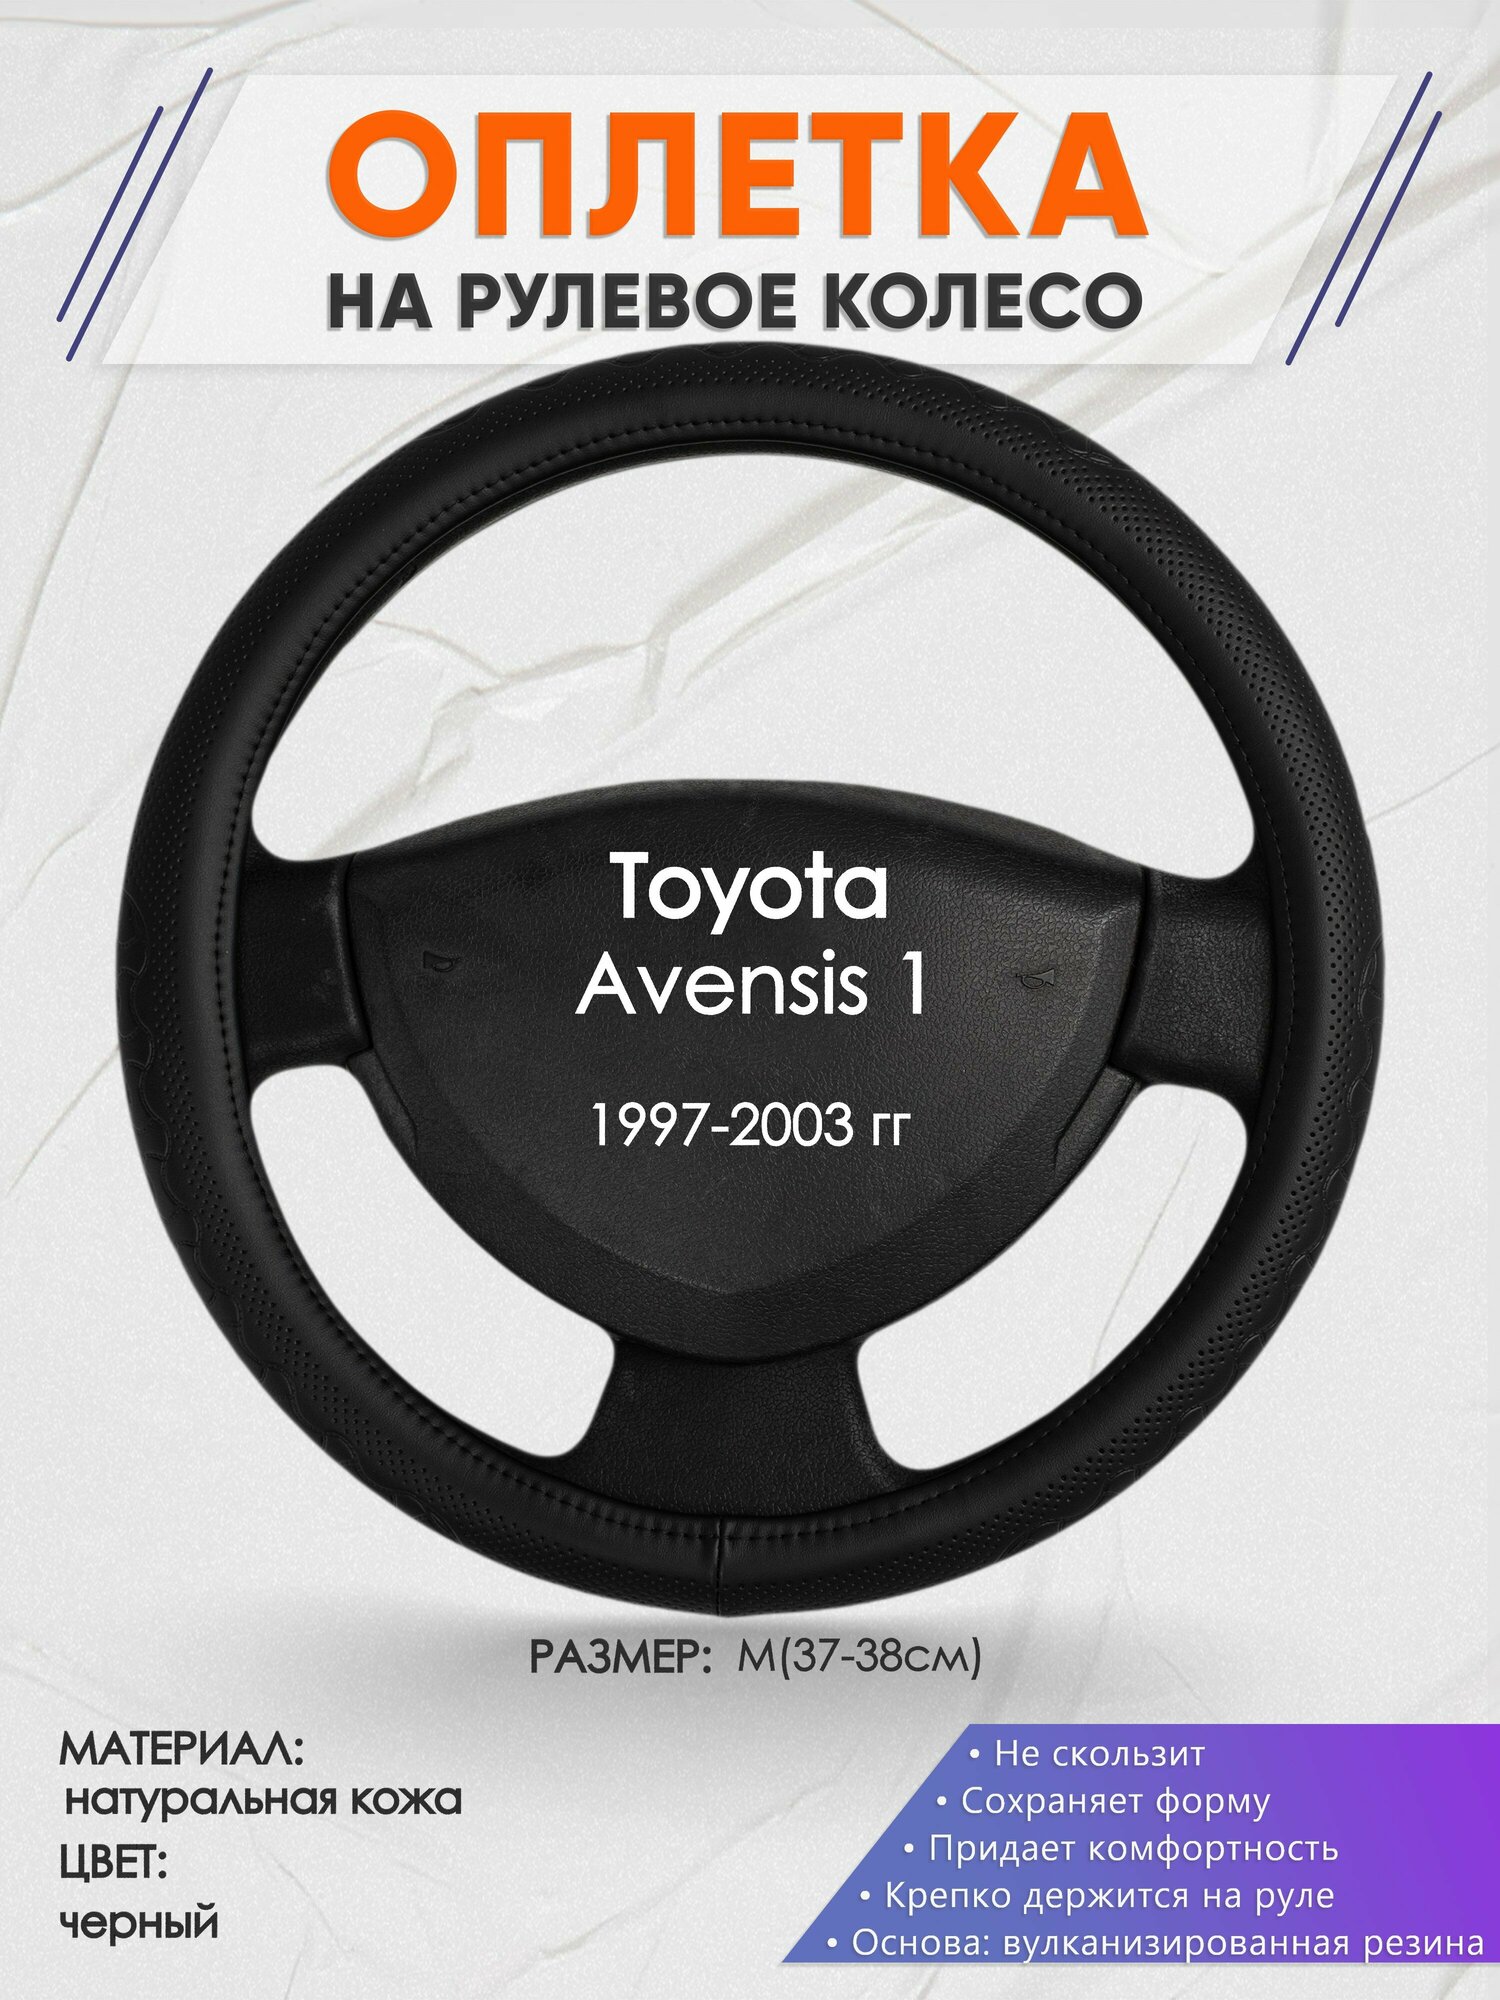 Оплетка на руль для Toyota Avensis 1(Тойота Авенсис 1) 1997-2003, M(37-38см), Натуральная кожа 25